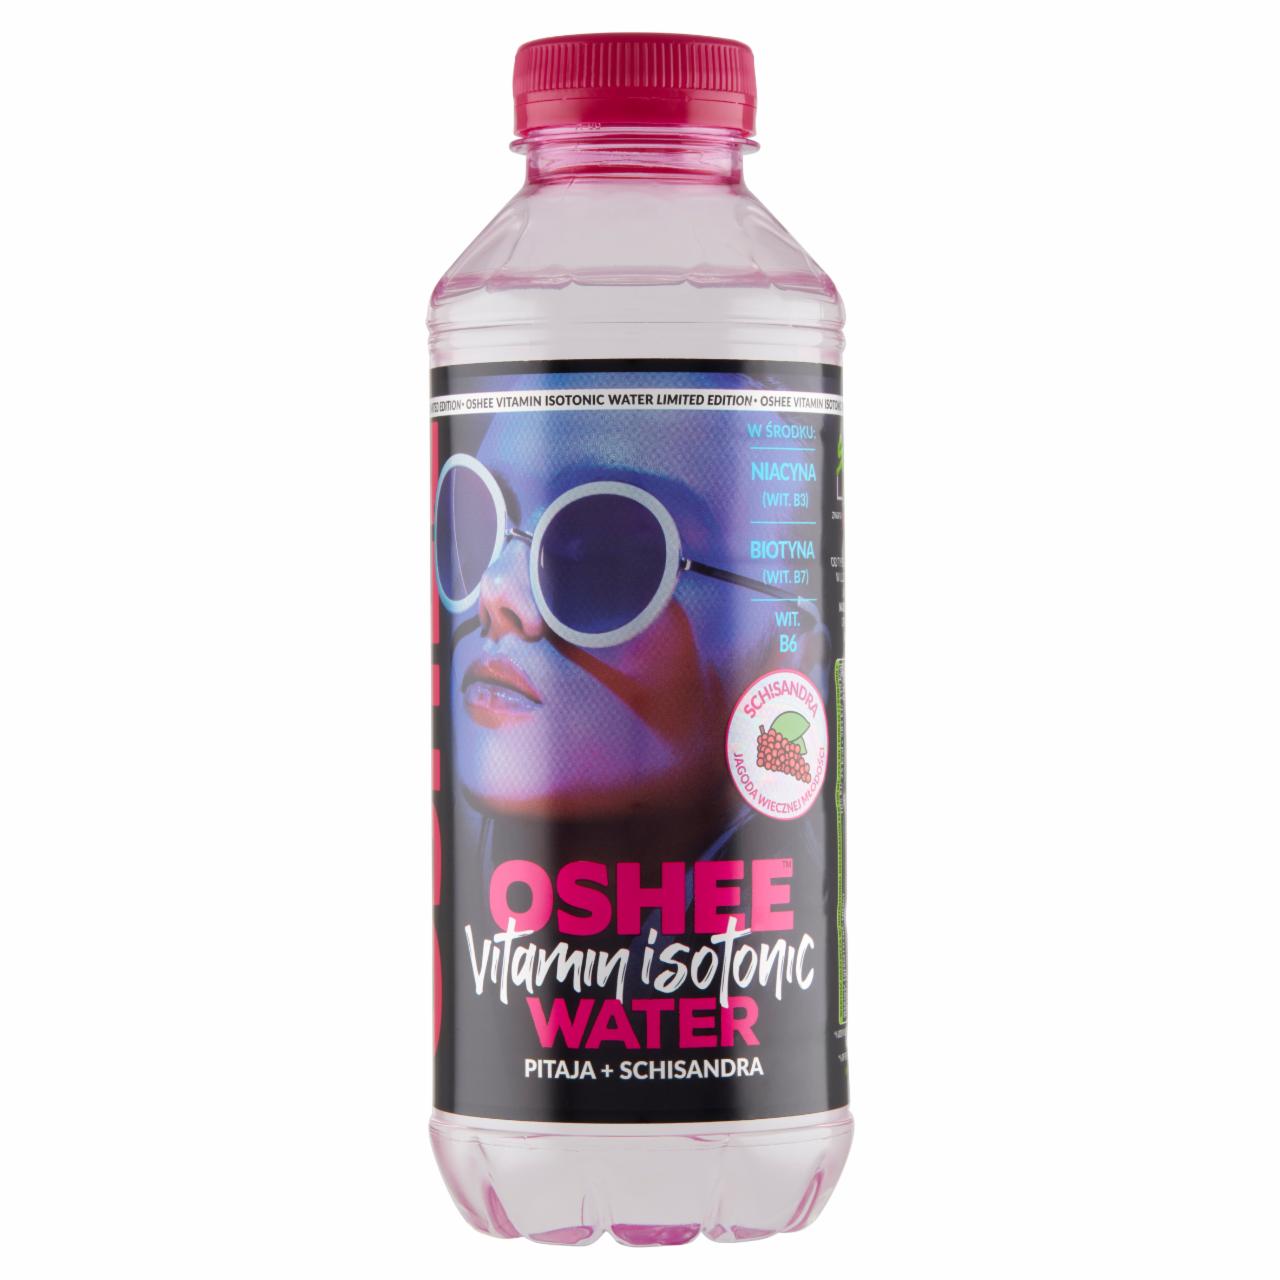 Zdjęcia - Oshee Vitamin Isotonic Water Napój niegazowany pitaja + schisandra 555 ml